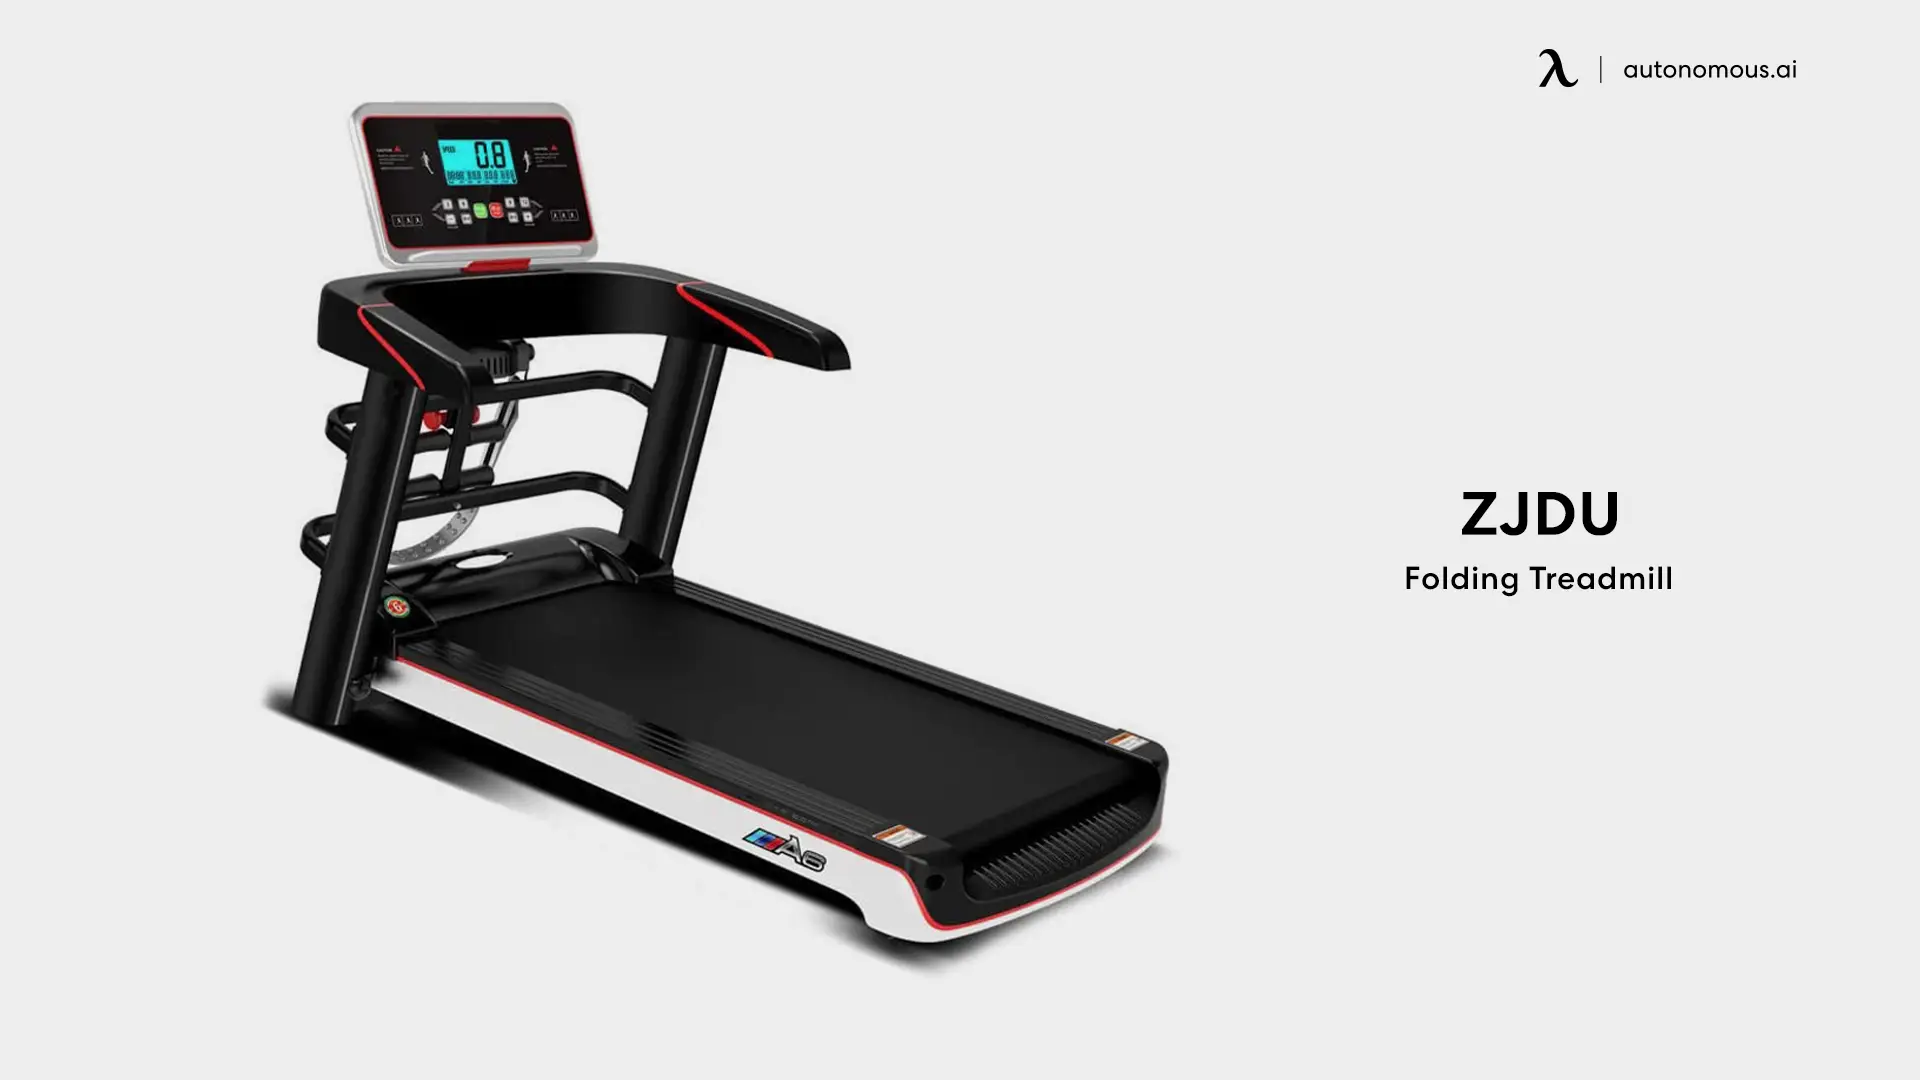 ZJDU Folding Treadmill